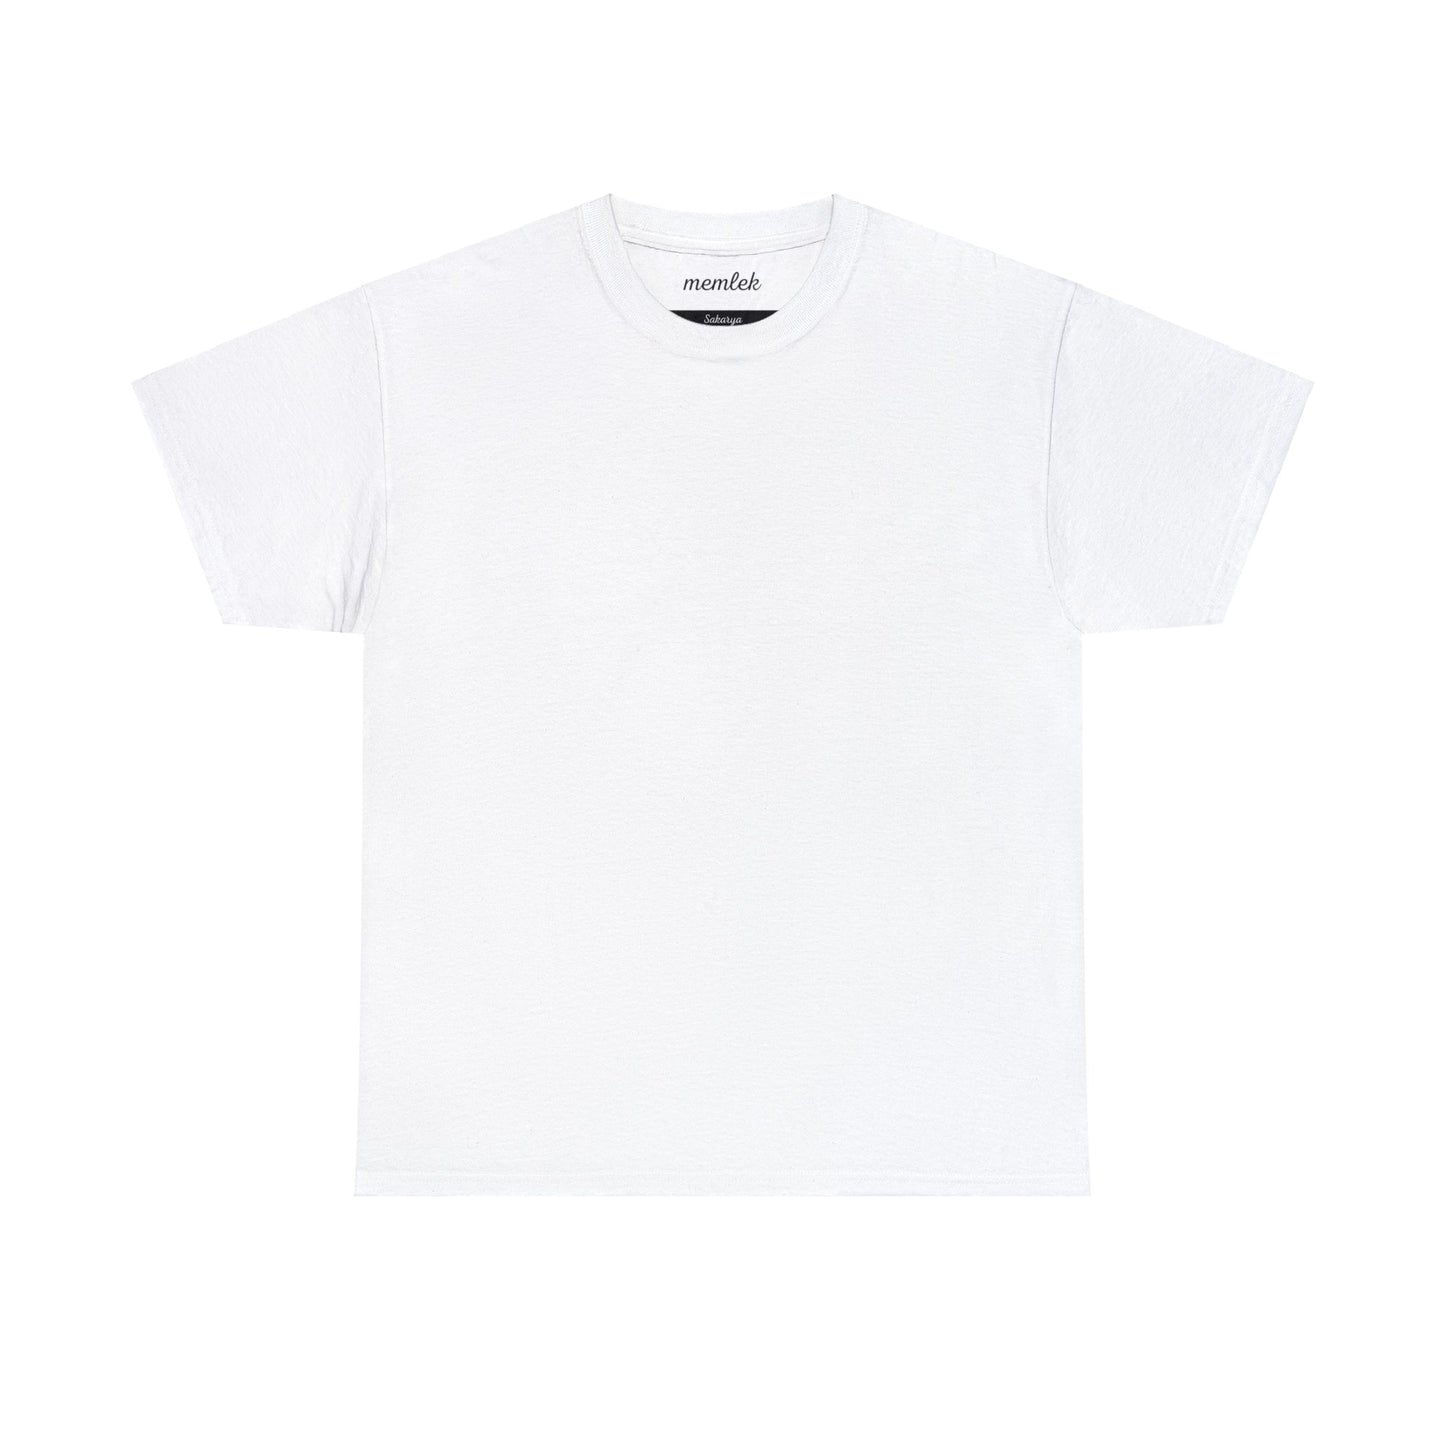 Kurt - 54 Sakarya - T-Shirt - Back Print - Black/White